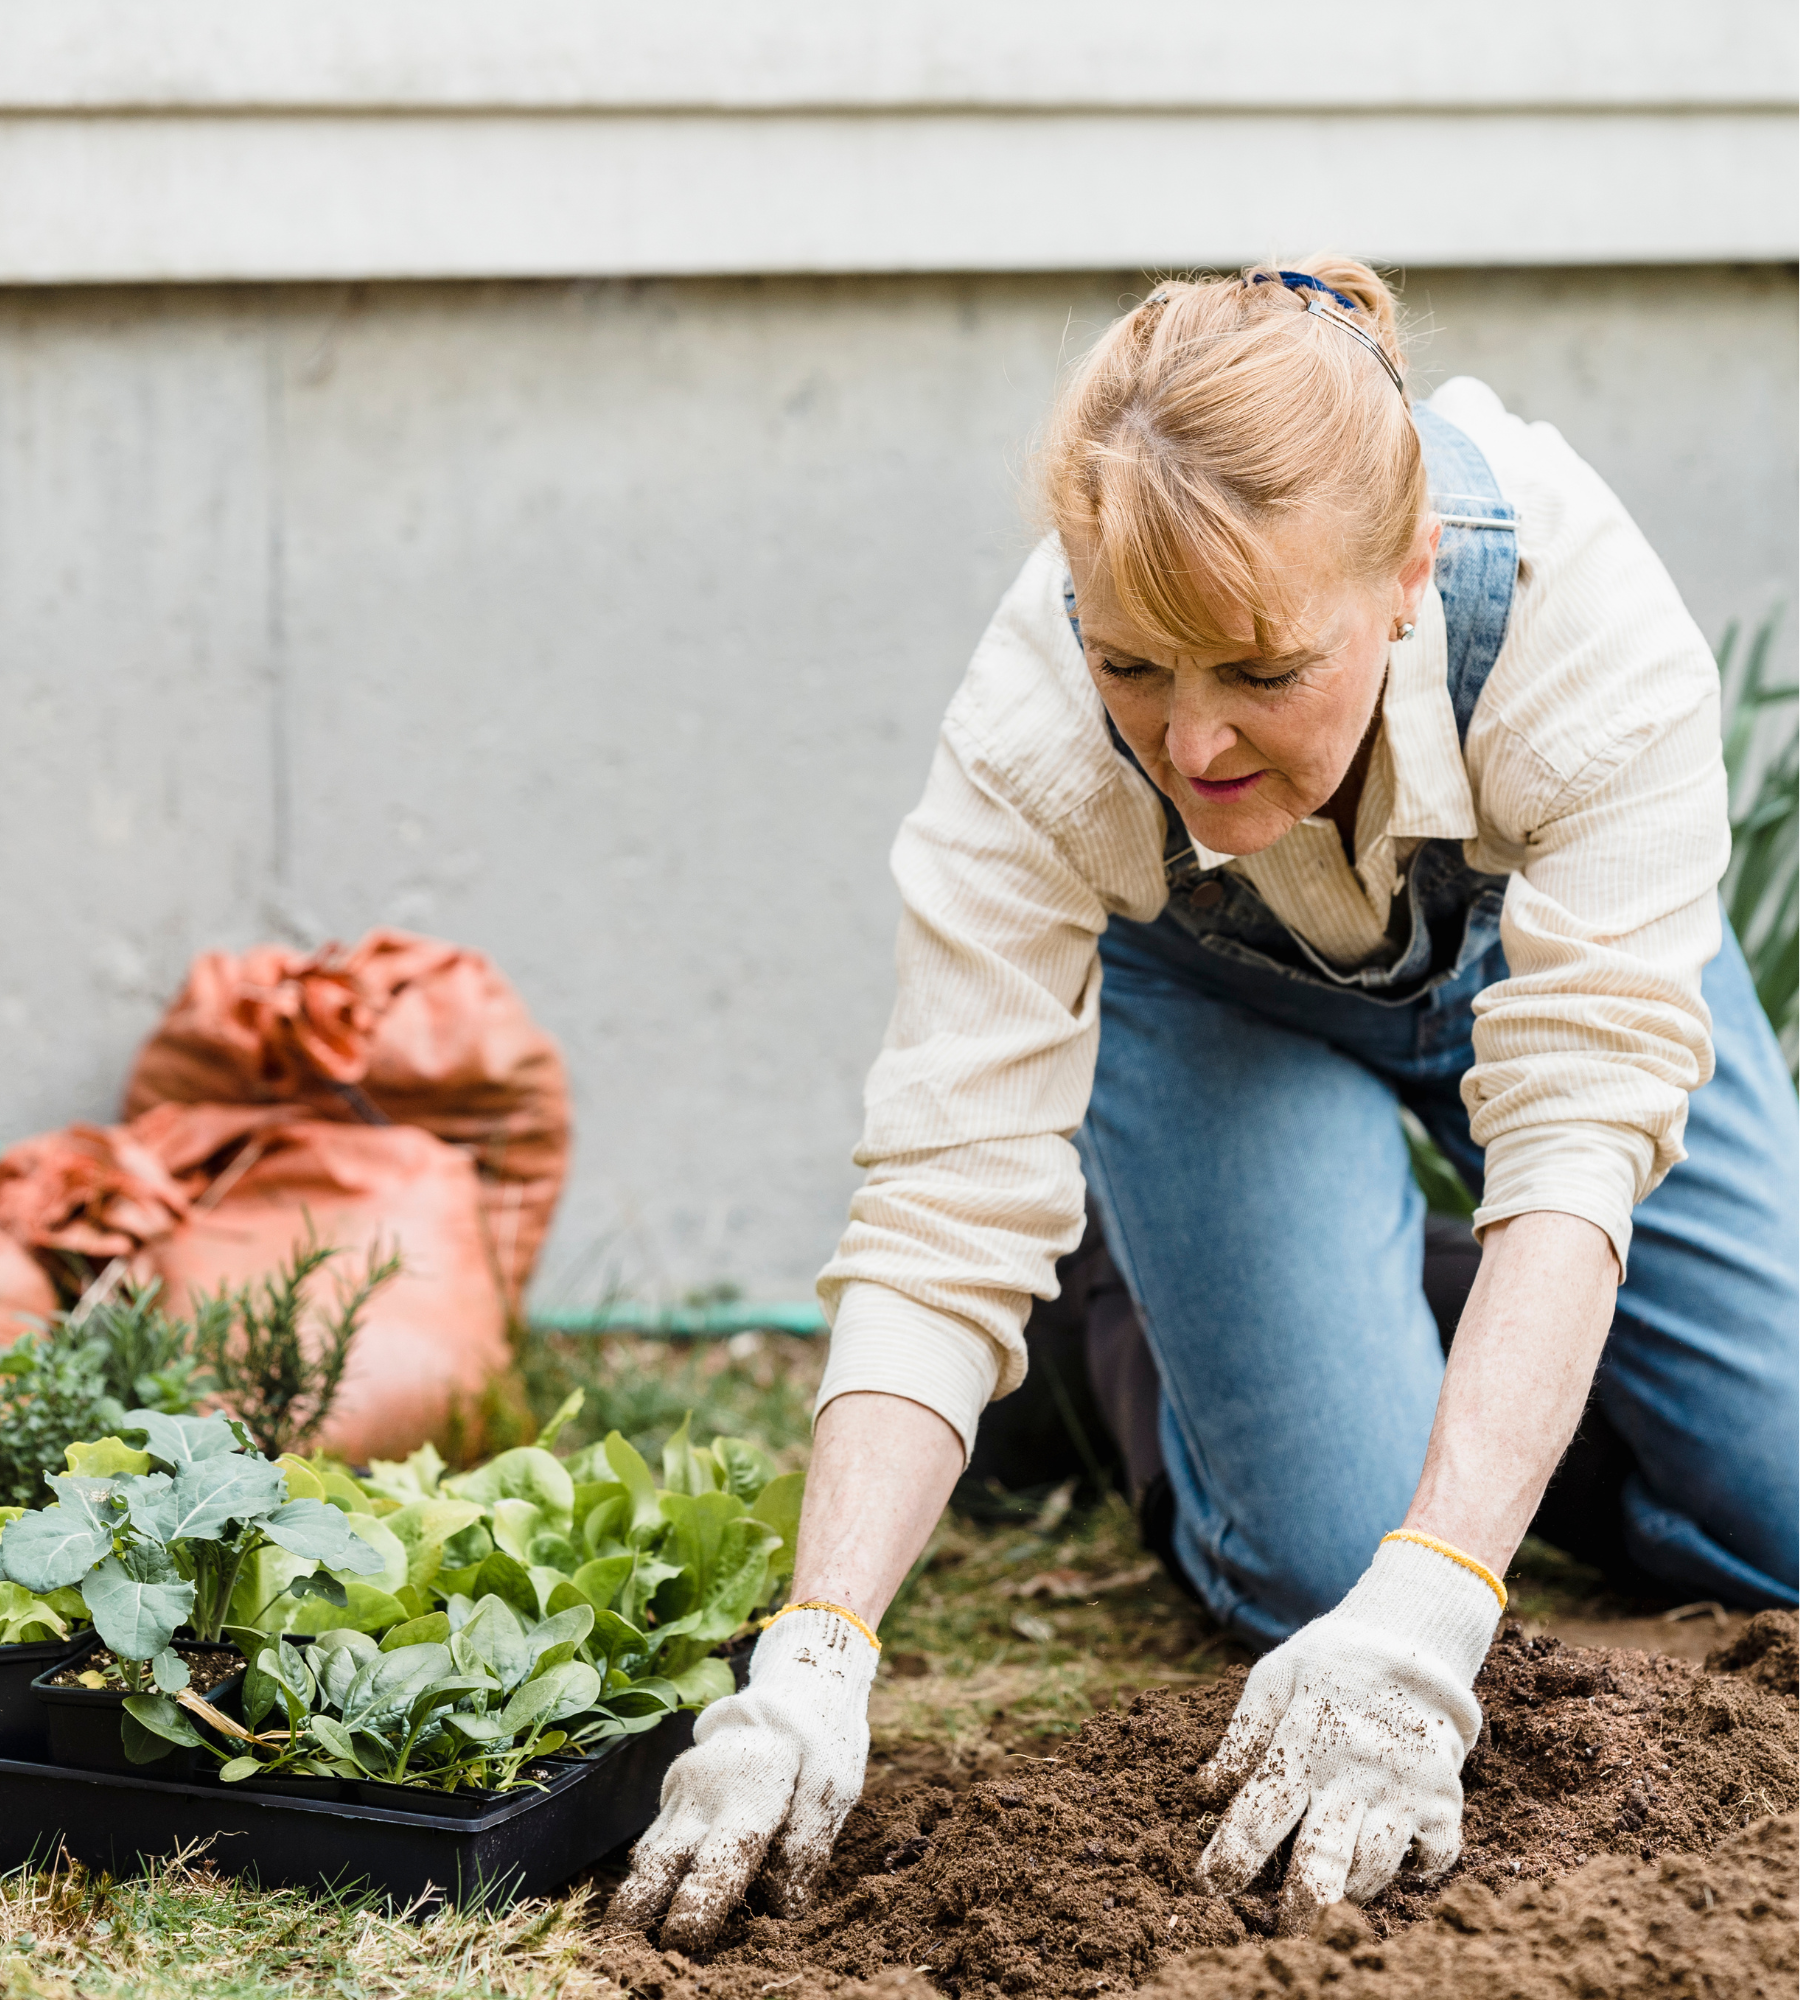 3. Gardening helps heart health